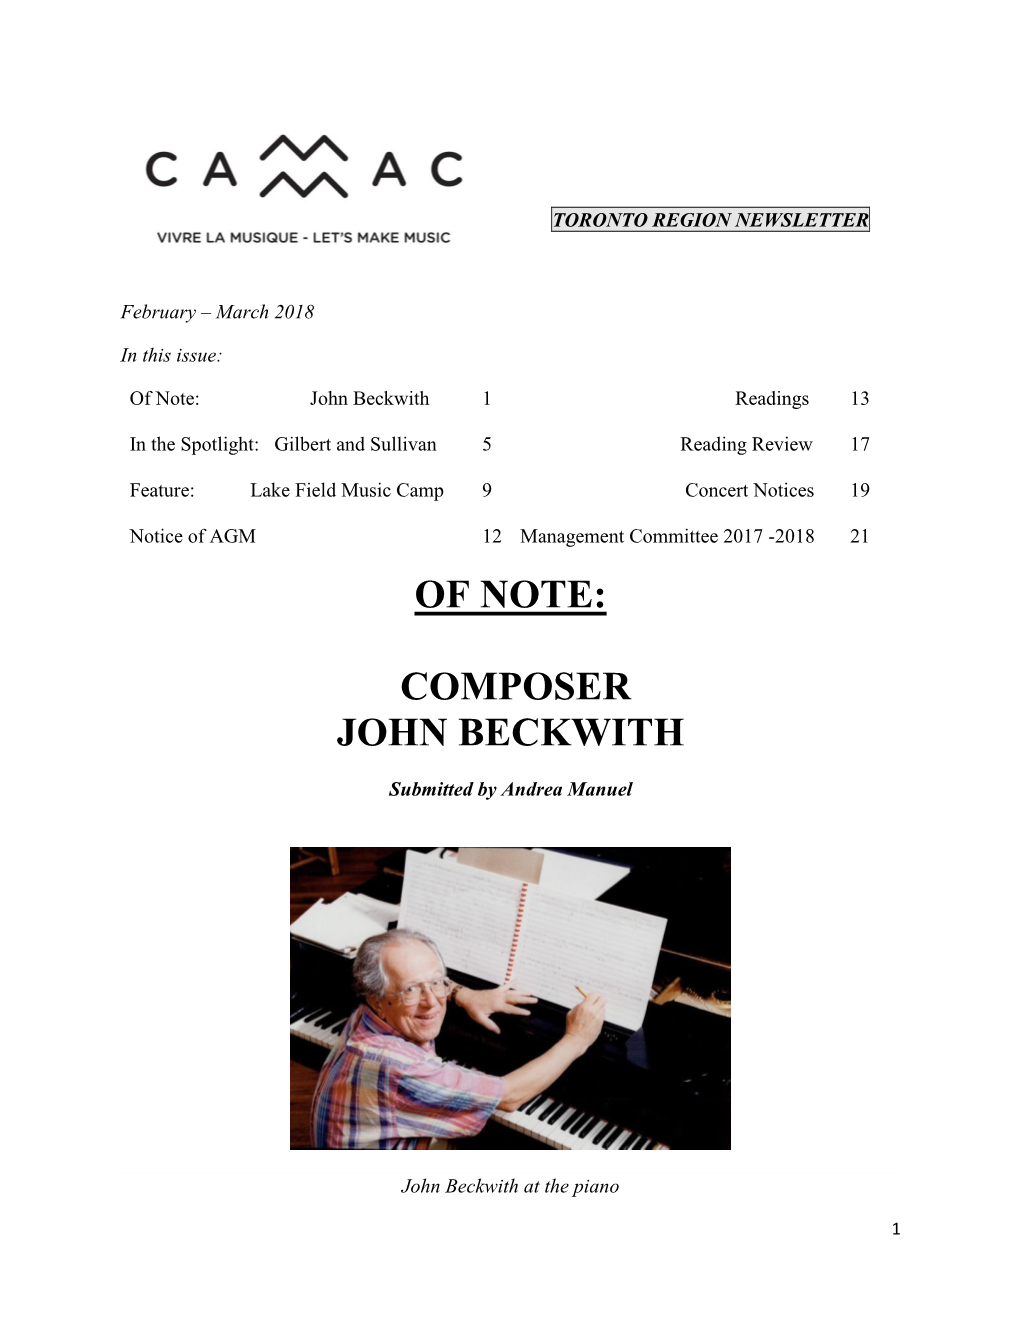 Composer John Beckwith